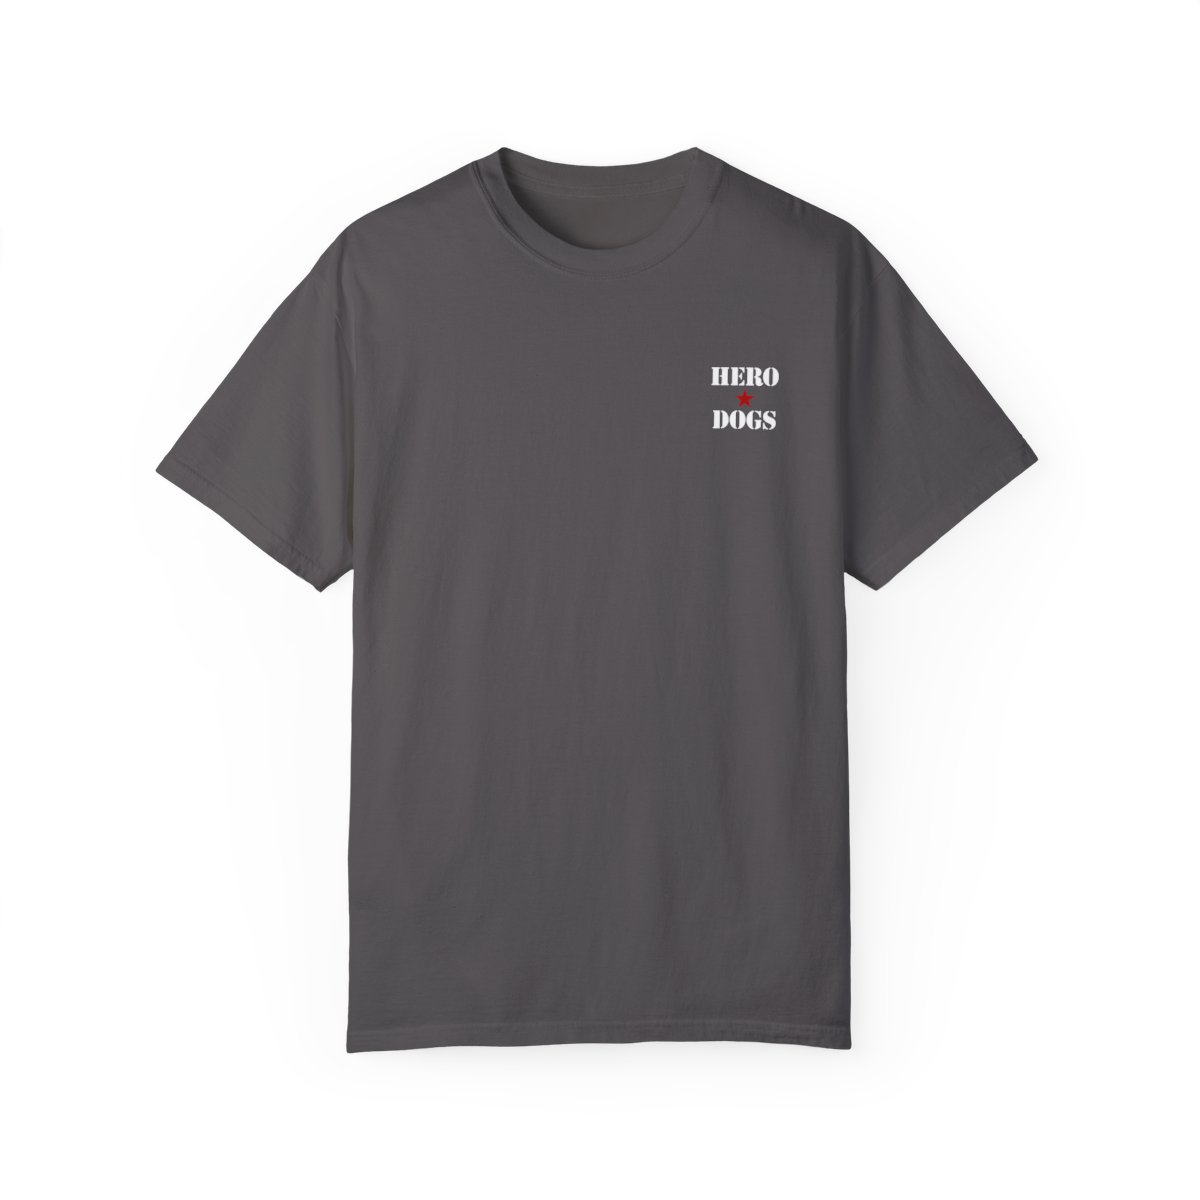 Unisex Garment-Dyed T-shirt product main image